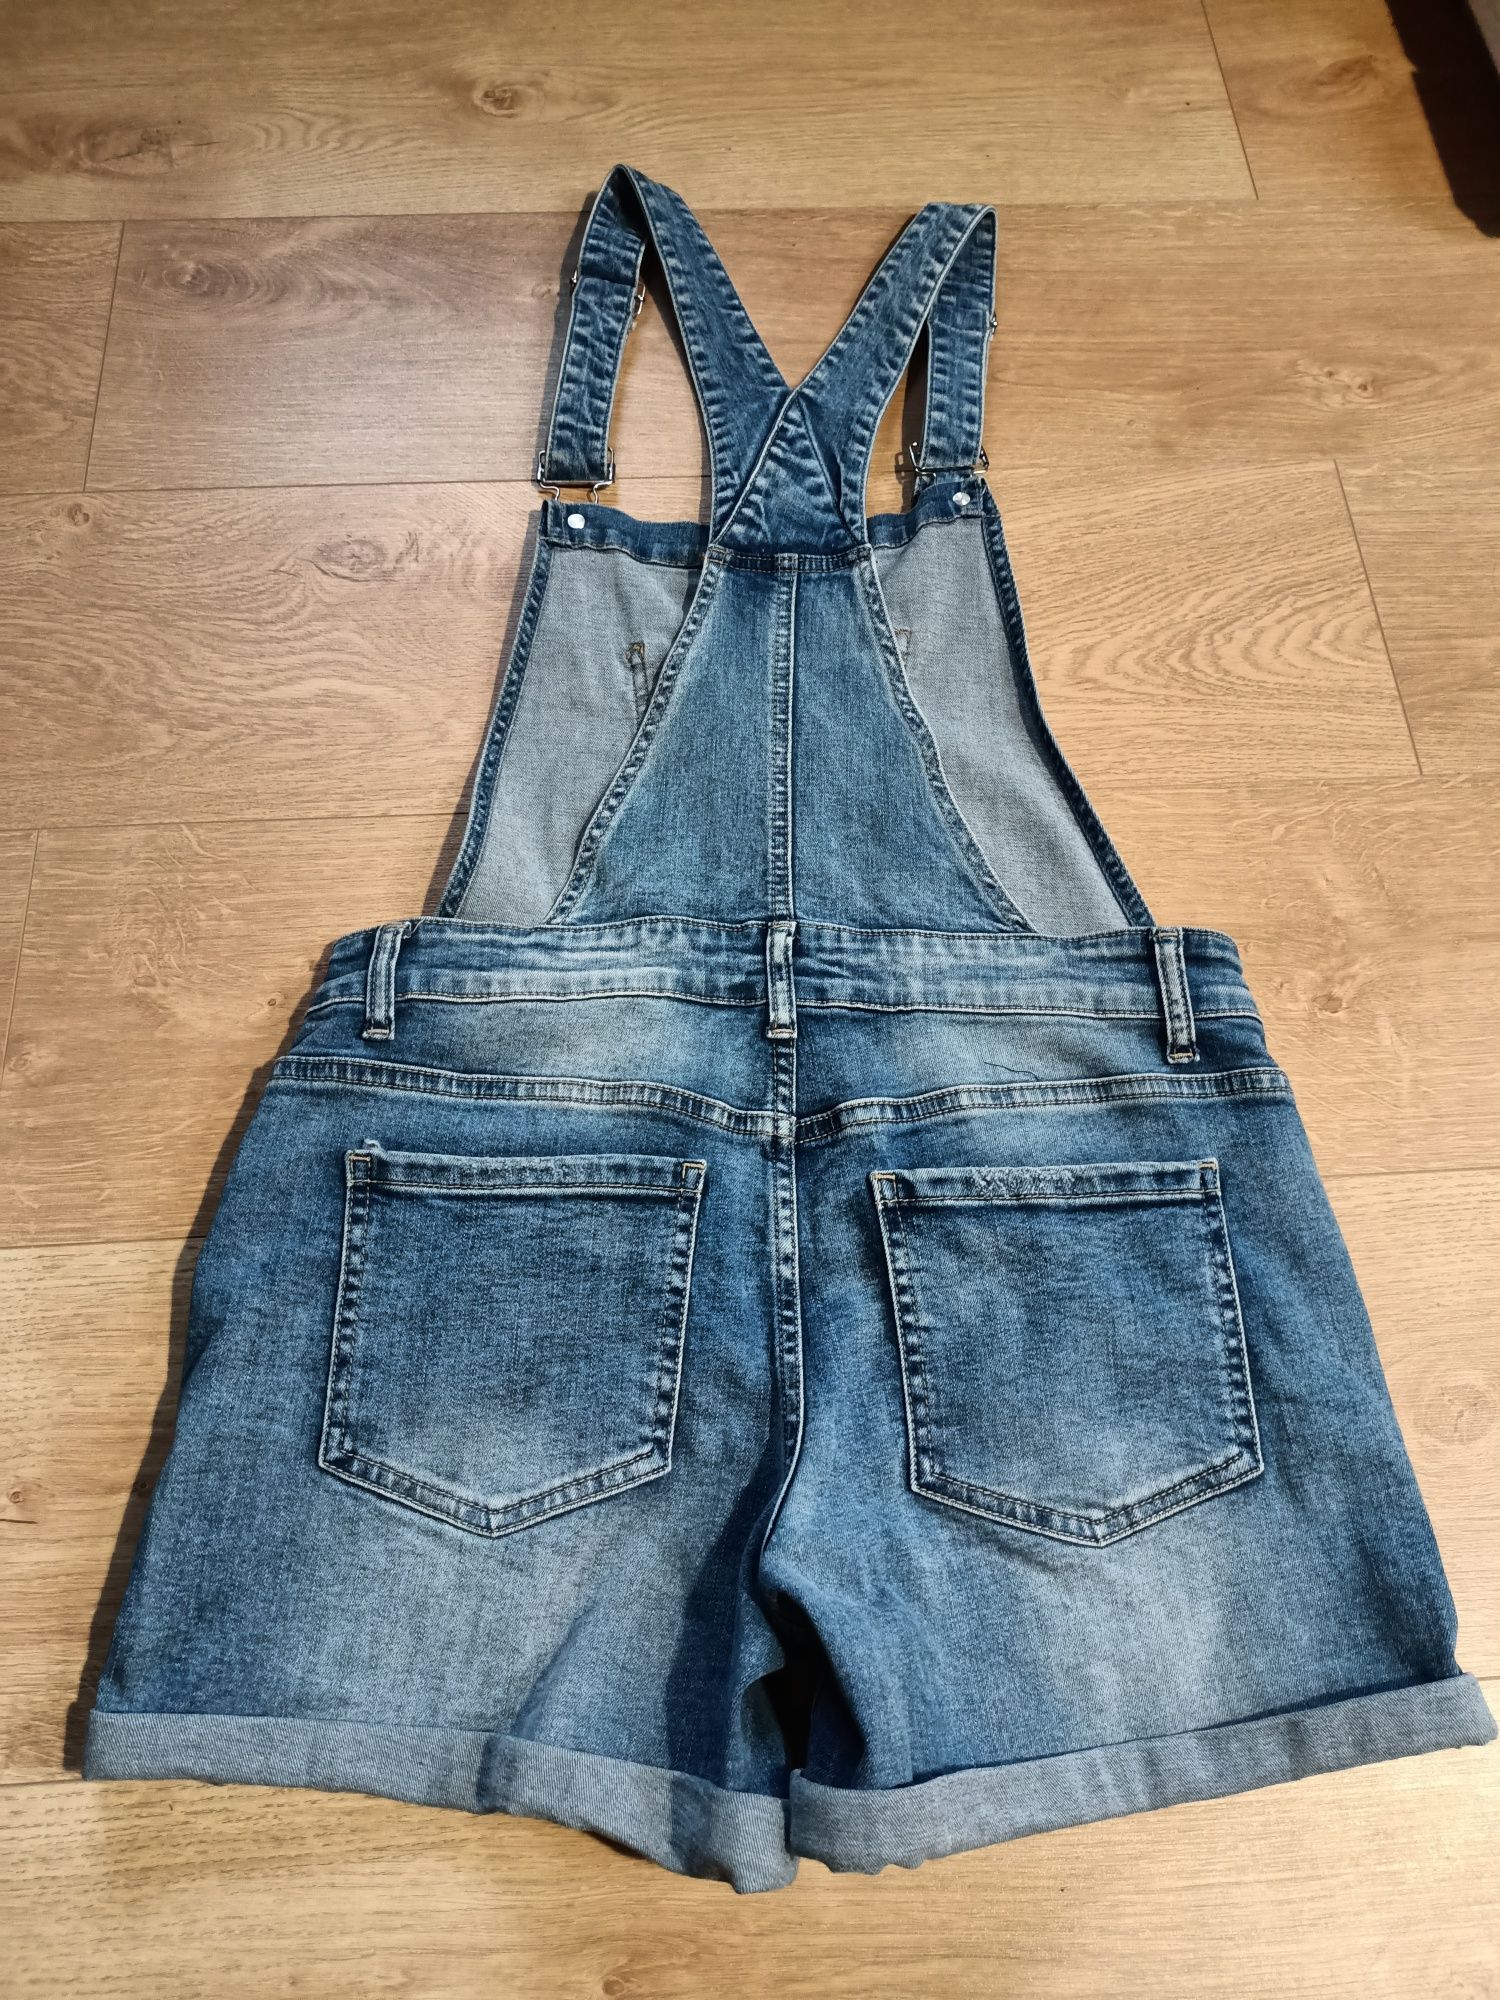 Spodnie ogrodniczki krótkie, jeans r. M